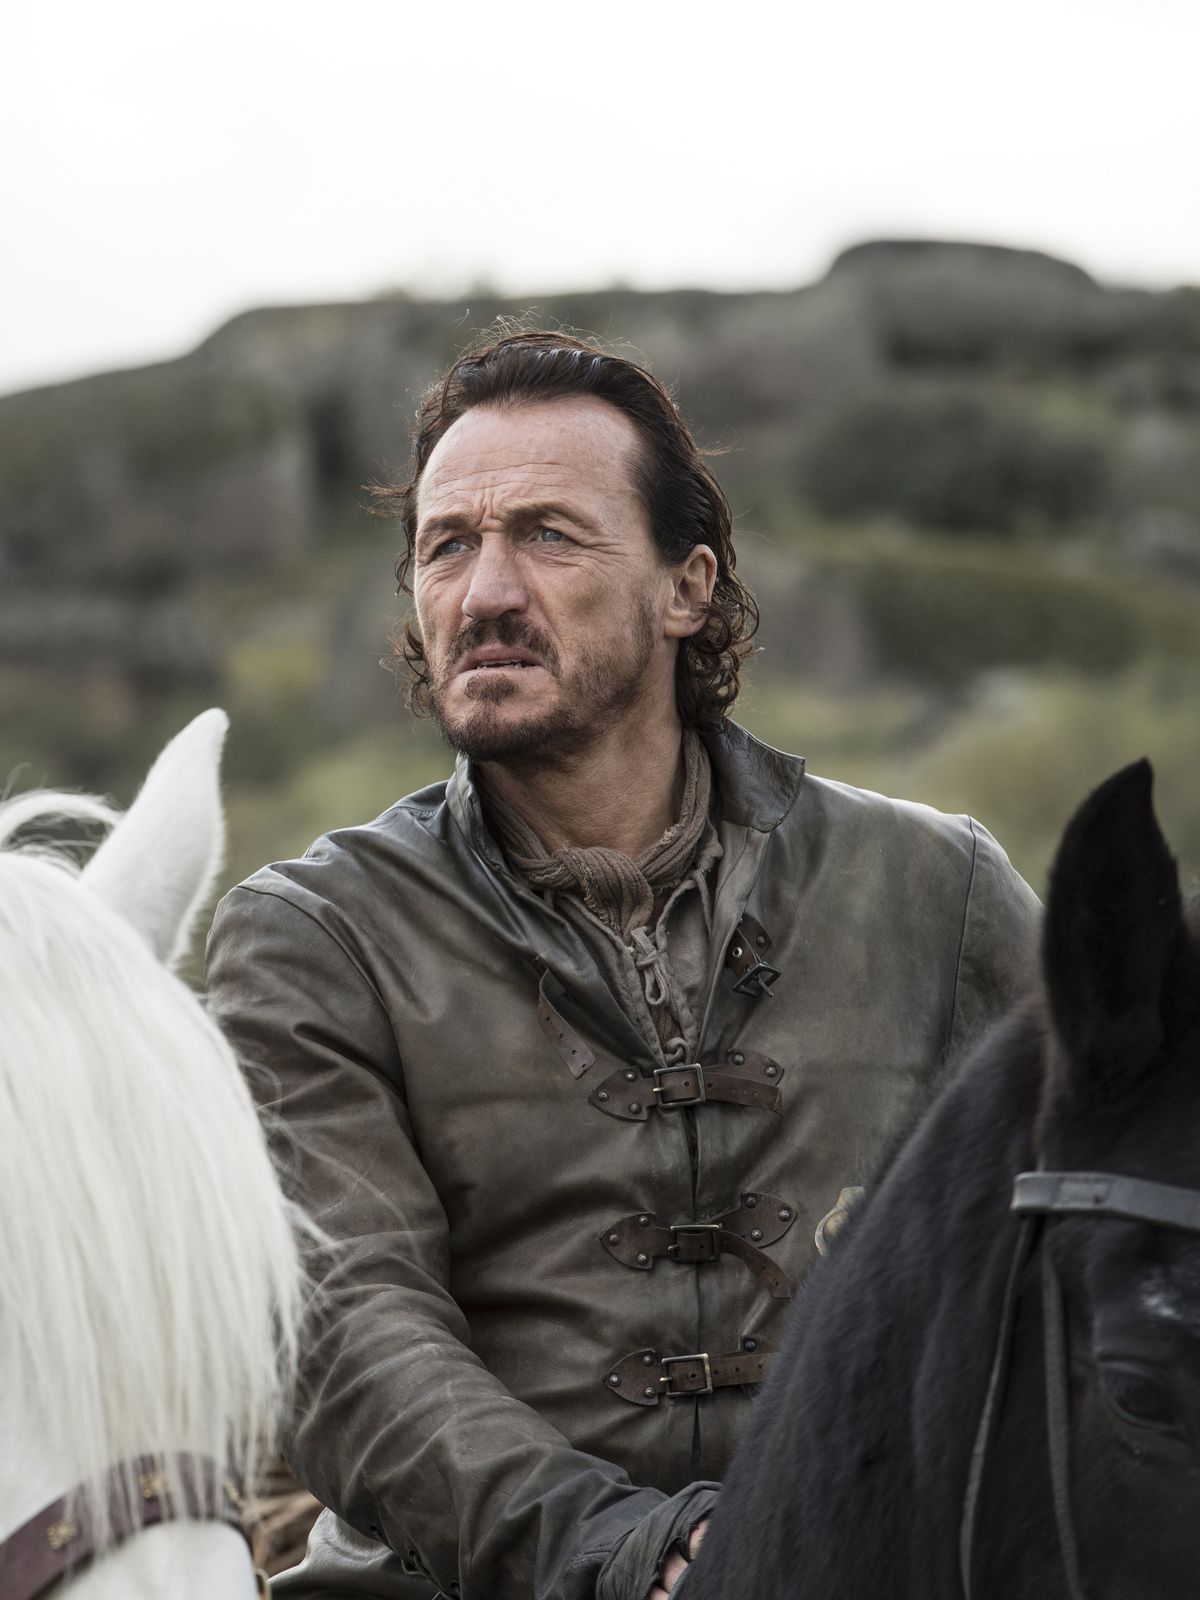 Game of Thrones 704 - Bronn on horseback